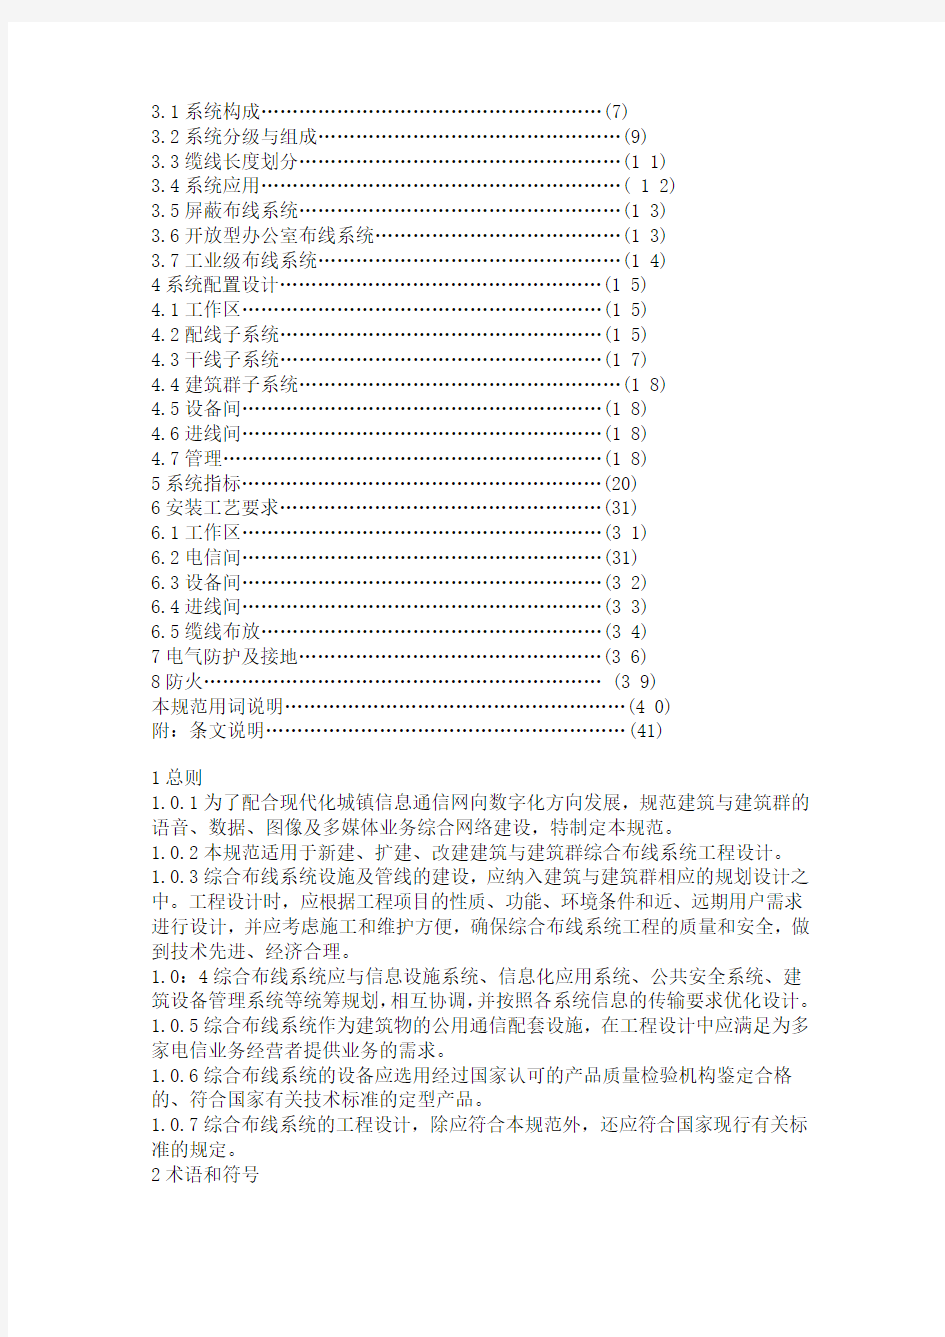 中华人民共和国国家标准综合布线